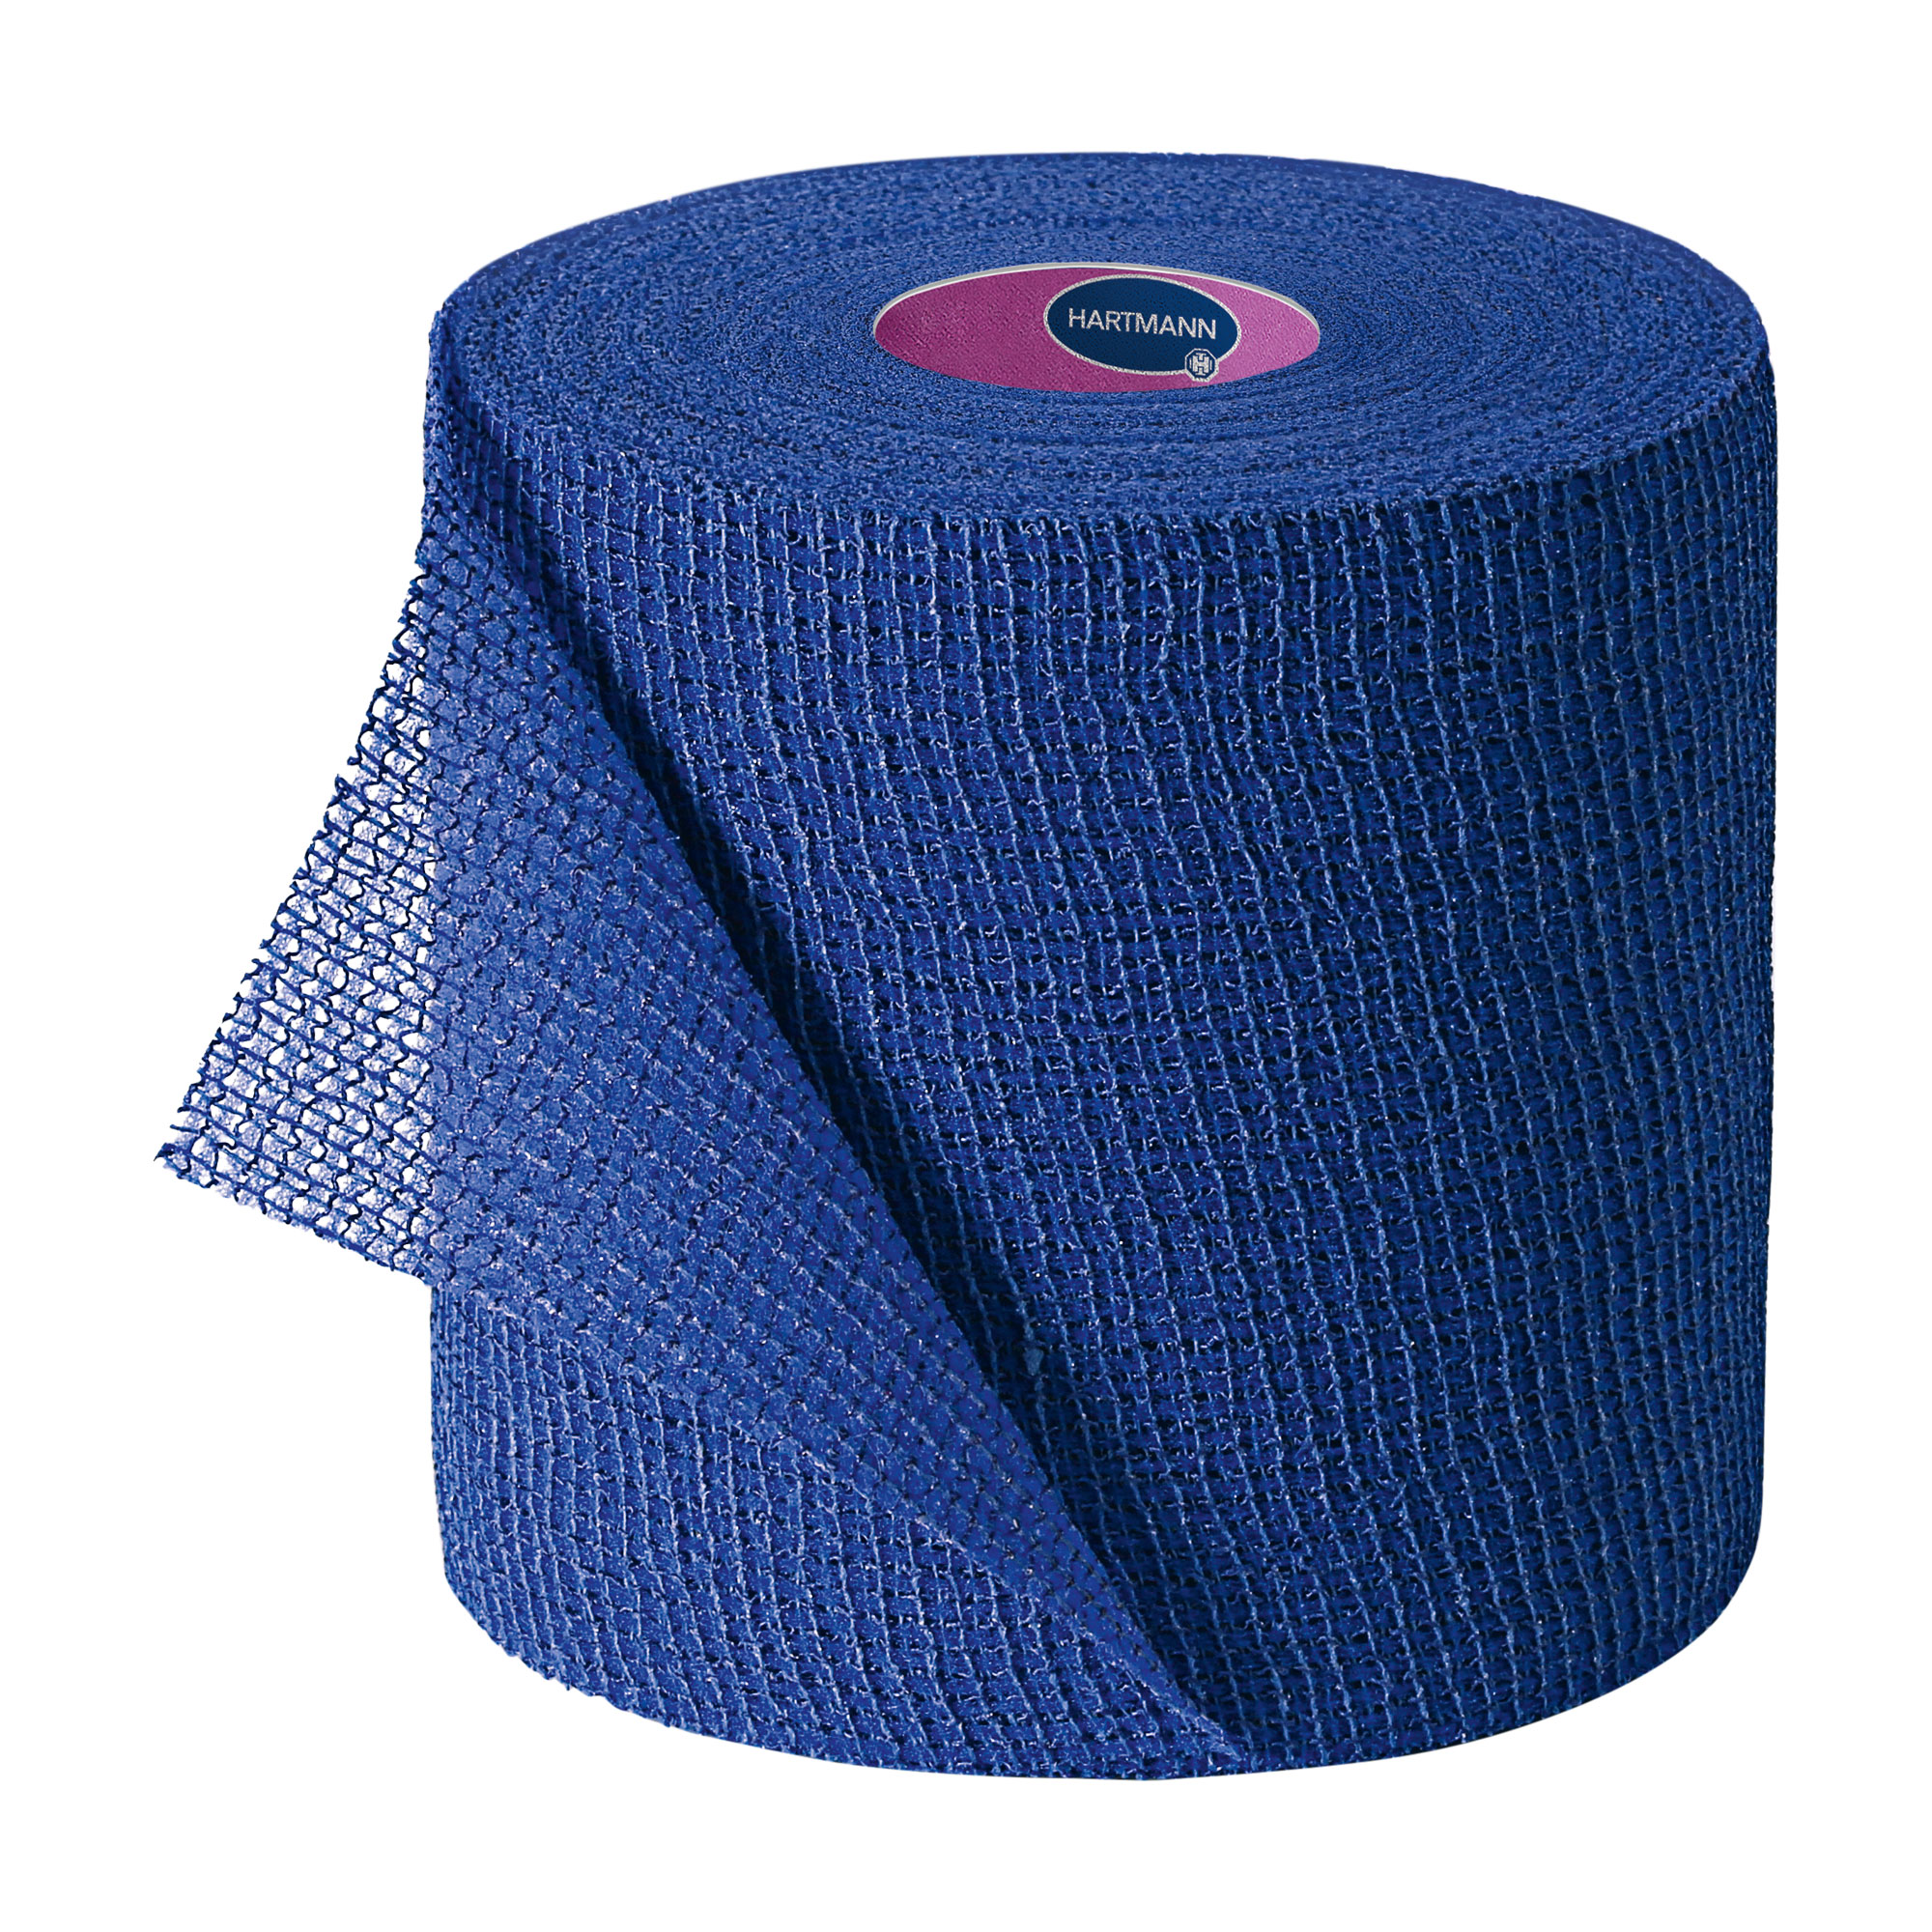 Einzeln verpackte kohäsive, elastische Fixierbinden. Mit dem zweifachen Hafteffekt. Farbe: blau.